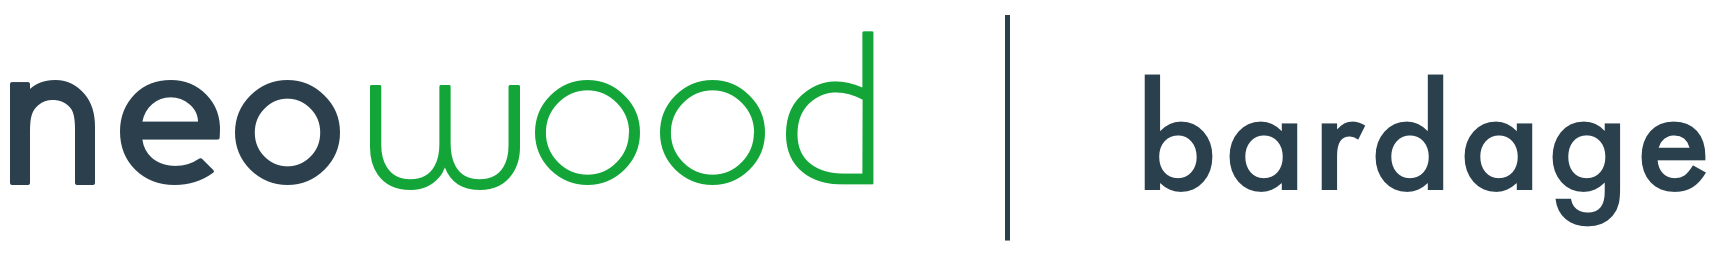 Neowood logo